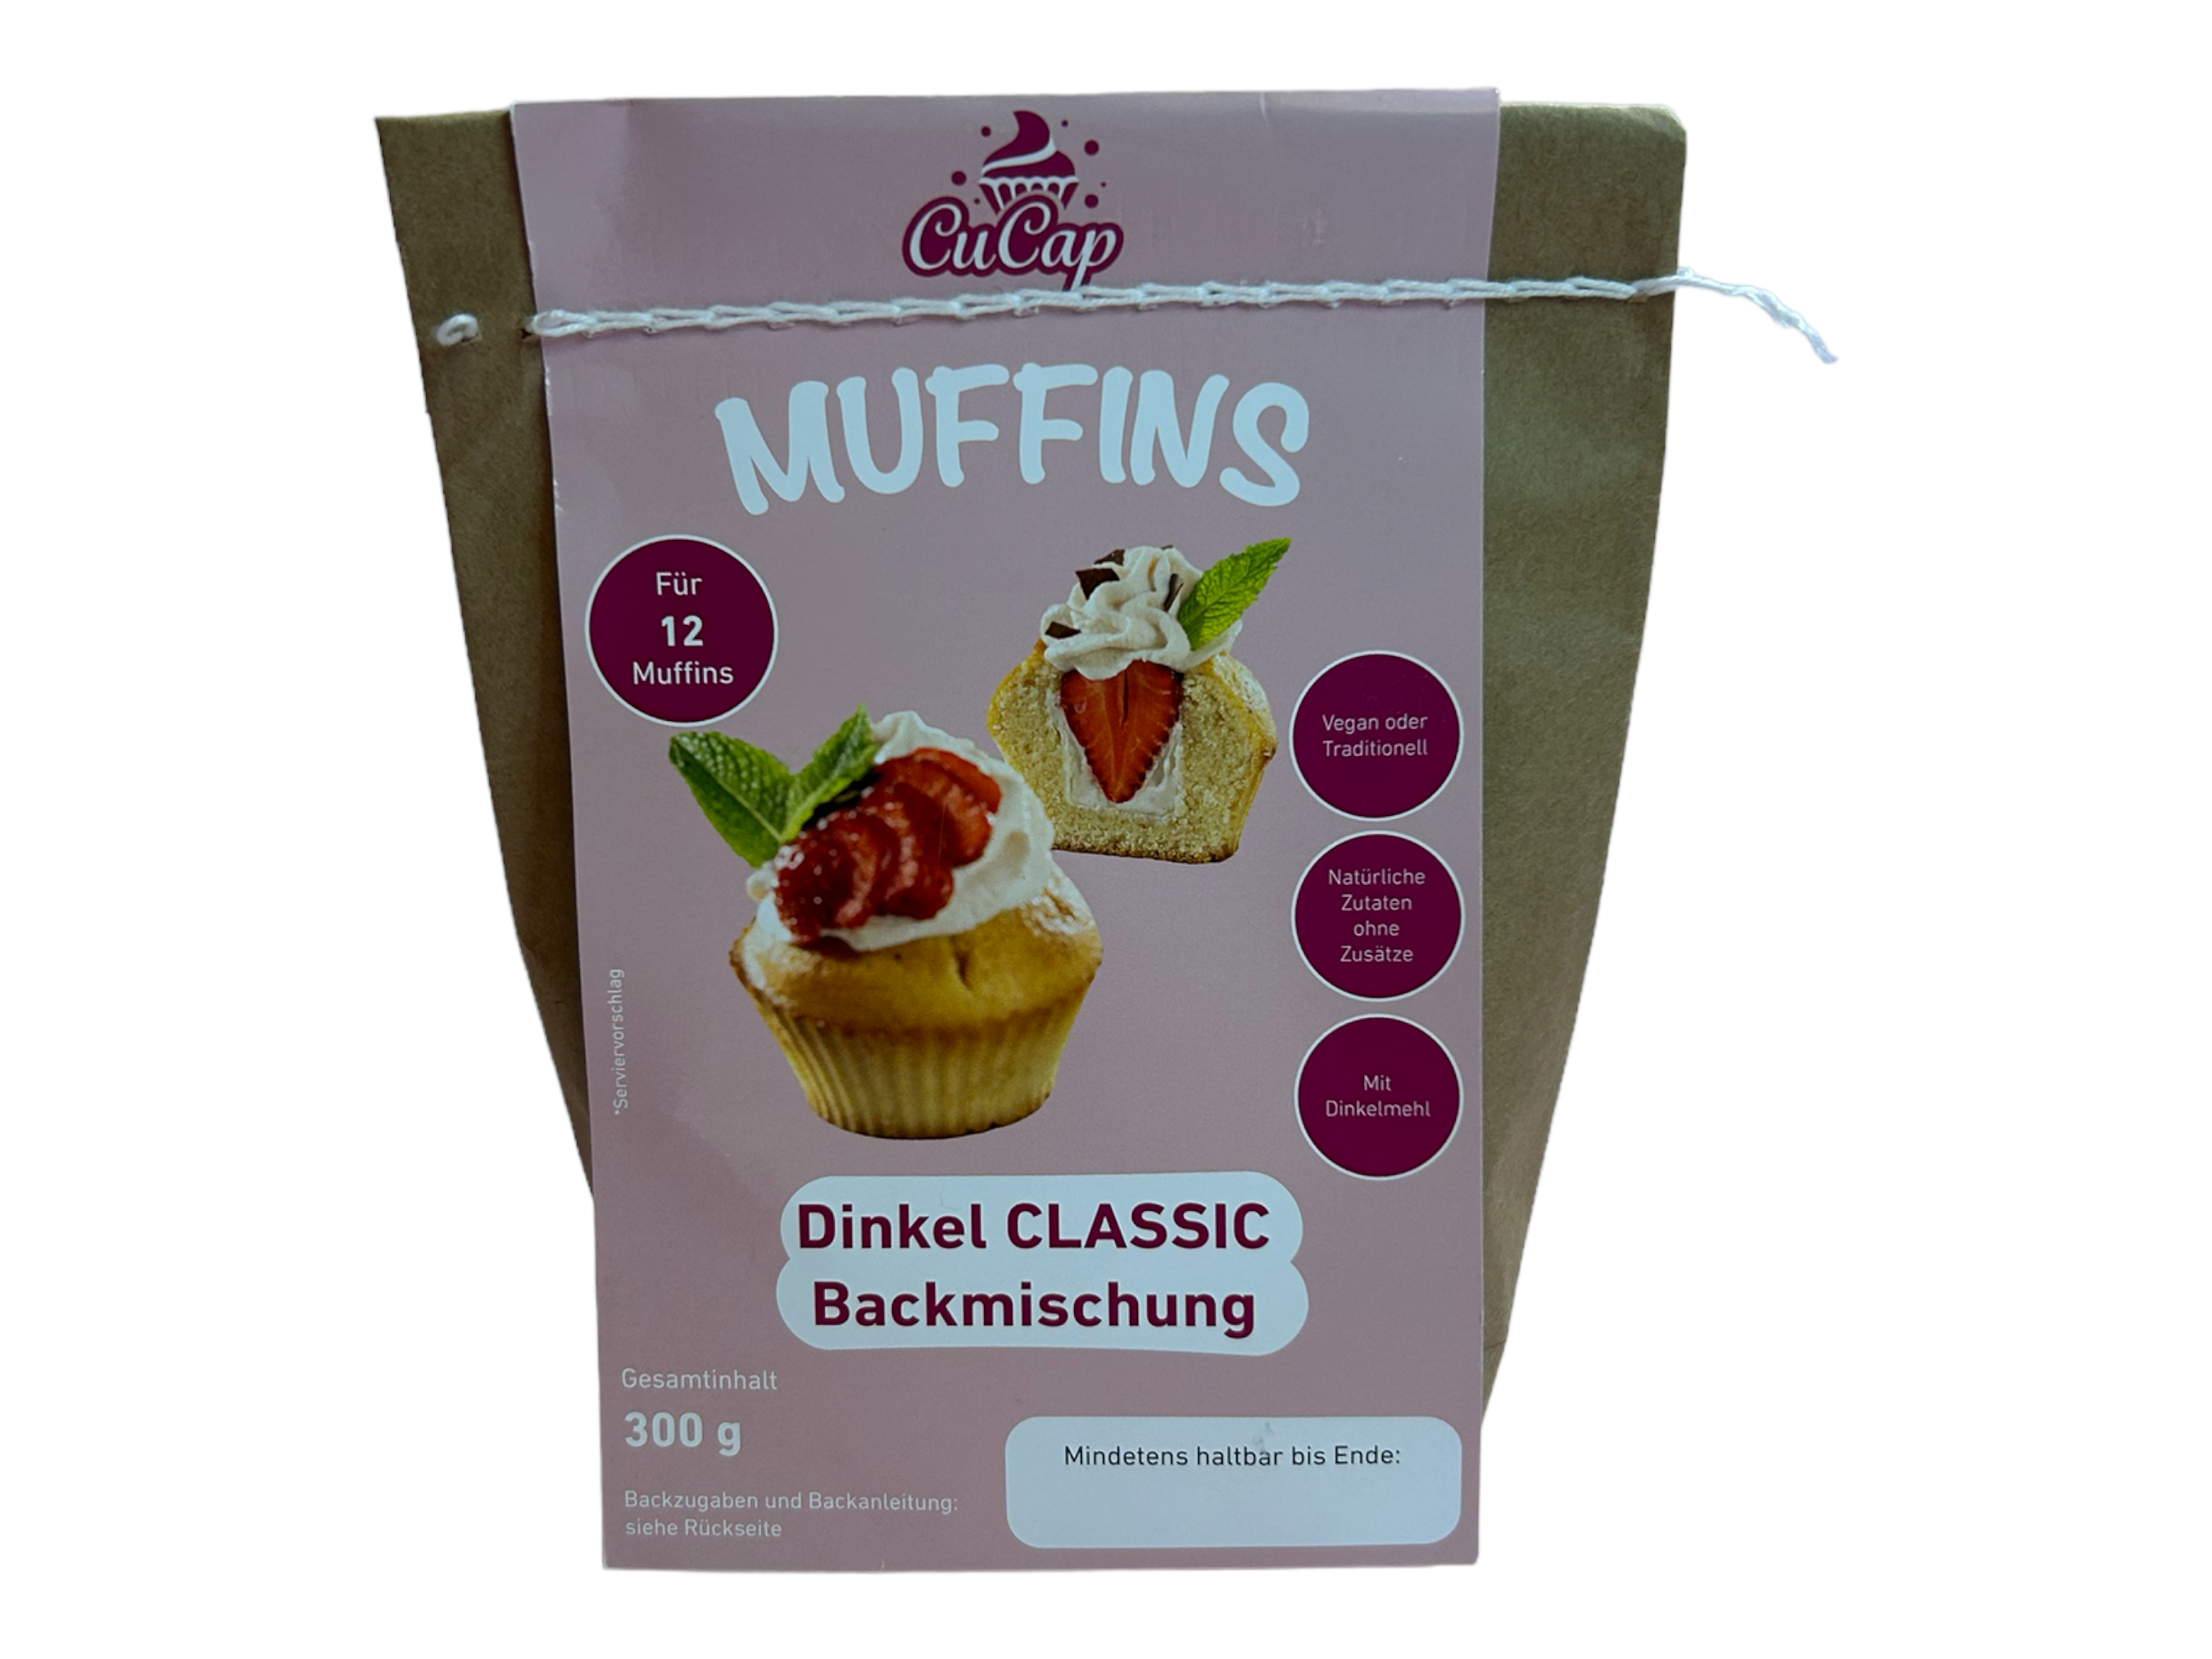 Muffin Backmischung aus Dinkelmehl - ohne Zusatz und Konservierungsstoffe